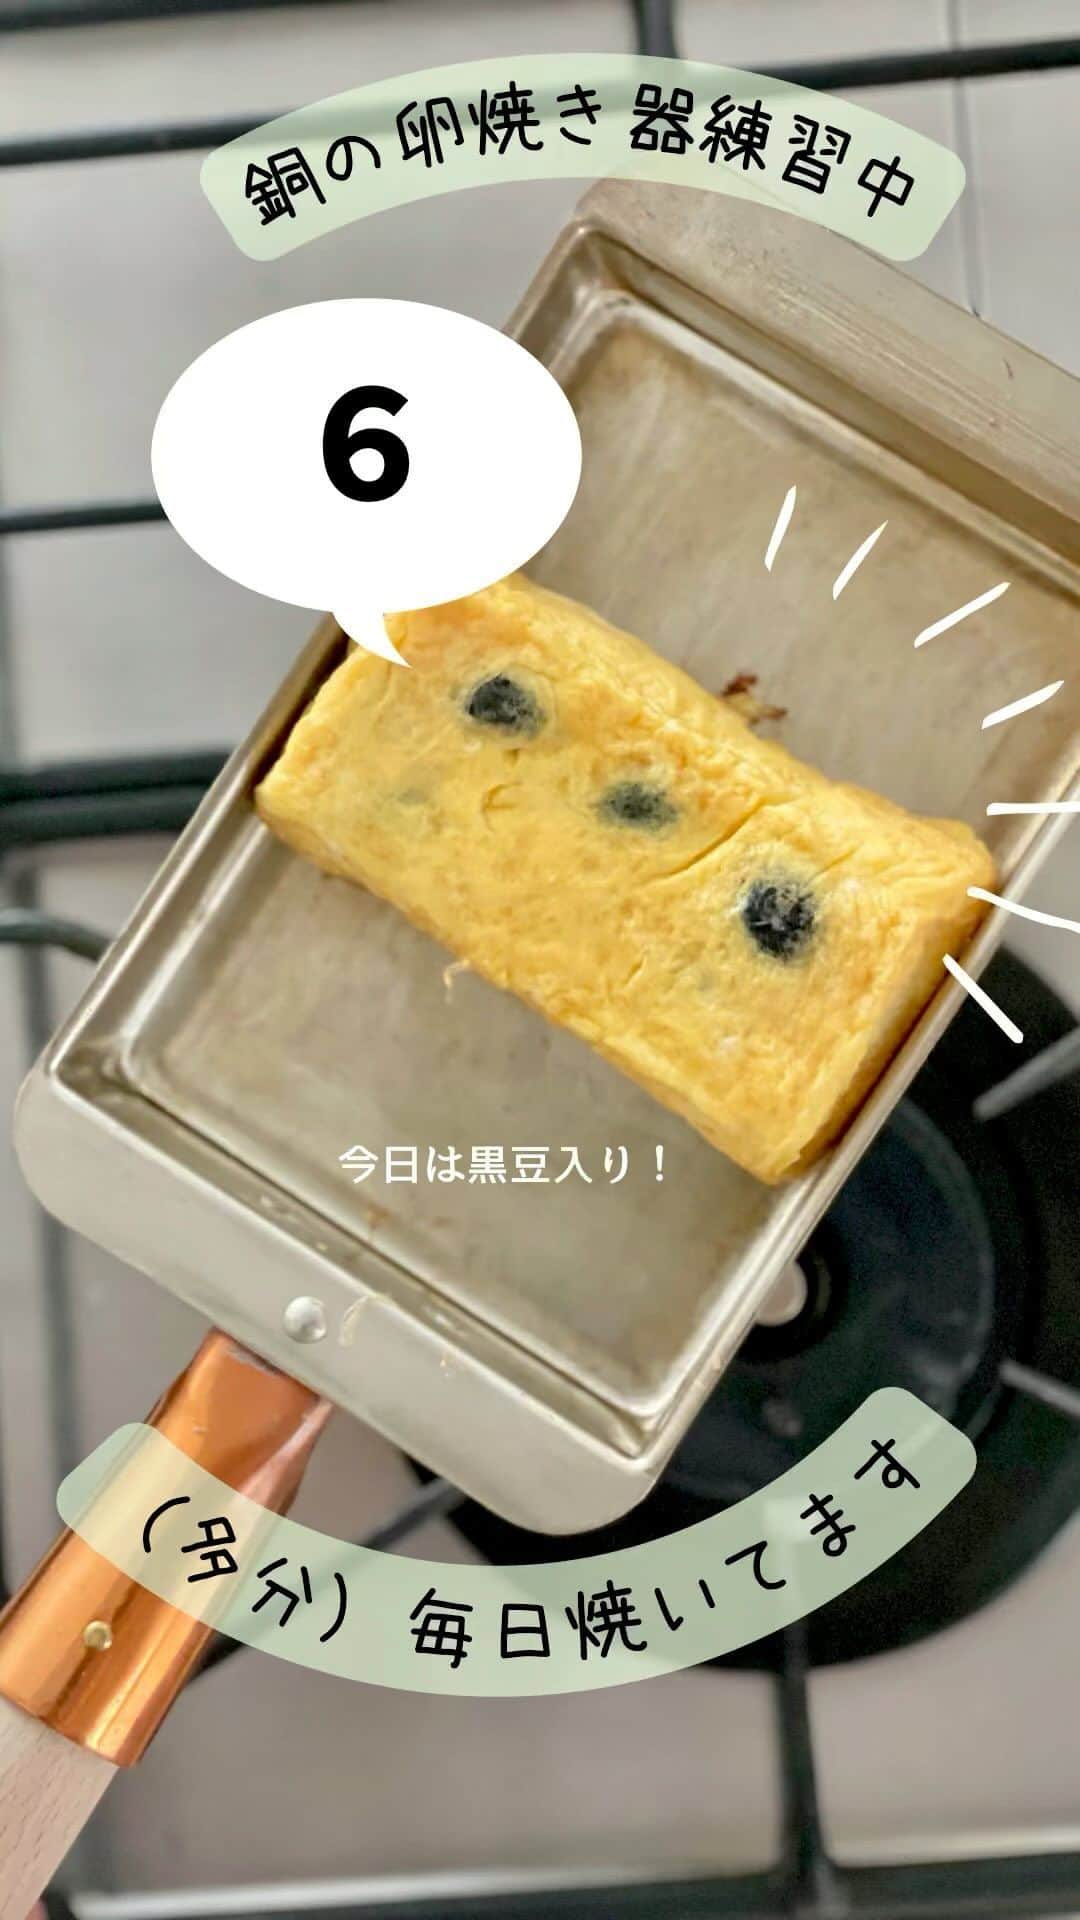 maki ogawaのインスタグラム：「パカっ シャカシャカ ジュー と スルスルを楽しむだけの動画です。  毎日プレーンの卵焼きばかり焼いていると どれを編集したのか アップしたのか、していないのかが 全くわからなくなるので 具材を入れることにしました。  今日は黒豆。 黒豆の甘みがあるので お砂糖はいつもの半分の小さじ1/2。  黒豆は 先に卵液に混ぜるべきか フライパンの卵液に乗せるべきか 迷いましたが、  あと乗せが正解ですっ😅  切ってみたら豆が偏ってしまいました。 豆の量は15g。大さじに山盛りかな？ 甘い卵焼き好きさんにはたまらない、 ほんのり甘くて、 食べたら幸せな気分になる卵焼きでした。  🎀🎀🎀🎀🎀🎀🎀 お弁当教室のお知らせです。 １１月２５日（土曜日）東京都台東区谷中にてお弁当教室を 開催します。  当日は、わっぱ、塗り、プラ、ホーロー等の 私の手持ちのお弁当箱を持参いたします。 （使い捨てのお弁当箱も用意しております）  お好きなお弁当箱を選んでいただき、 おにぎりと副菜をご自身で詰め 写真を撮って(食べて)楽しんでいただければと思います。  当日はこちらの卵焼き器も持参します🥰  国際交流のためのお弁当教室です。  言語は日本語、英語の言語となります。 （私が日本語でレッスンを進めます。 主催者が英語で説明いたします）  詳細は→ @kitchennippon2707  @cuteobento までDMください。 🎀🎀🎀🎀🎀🎀🎀 #卵焼き器  #銅の卵焼き器  #卵焼きは甘い派  #卵焼き練習中 #卵焼きの作り方  #卵焼き #玉子焼き #卵焼きレシピ  #銅製卵焼き器  #銅製たまご焼き器  #料理動画  #料理記録  #料理教室 #料理教室東京」